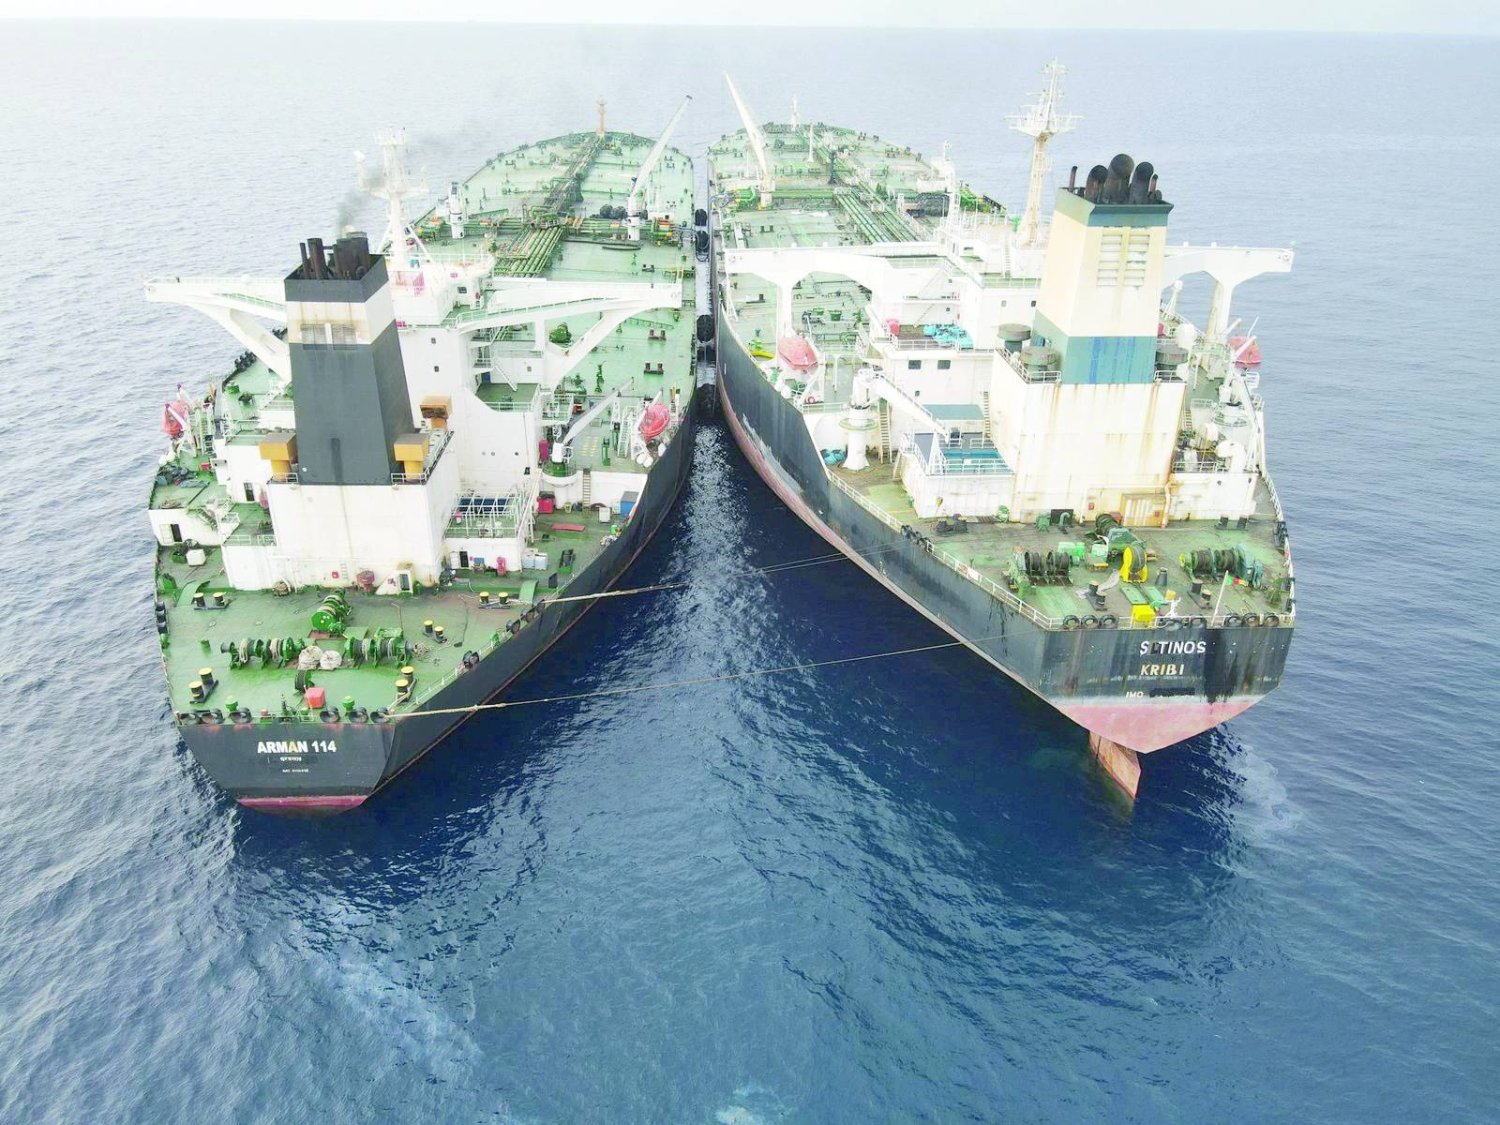 
عکسی که آژانس امنیت دریایی اندونزی از نفتکش ایرانی ام تی آرمان در حال حمل نفت به کشتی MTS Tinos با پرچم کامرون در ژوئیه گذشته منتشر کرد (رویترز)